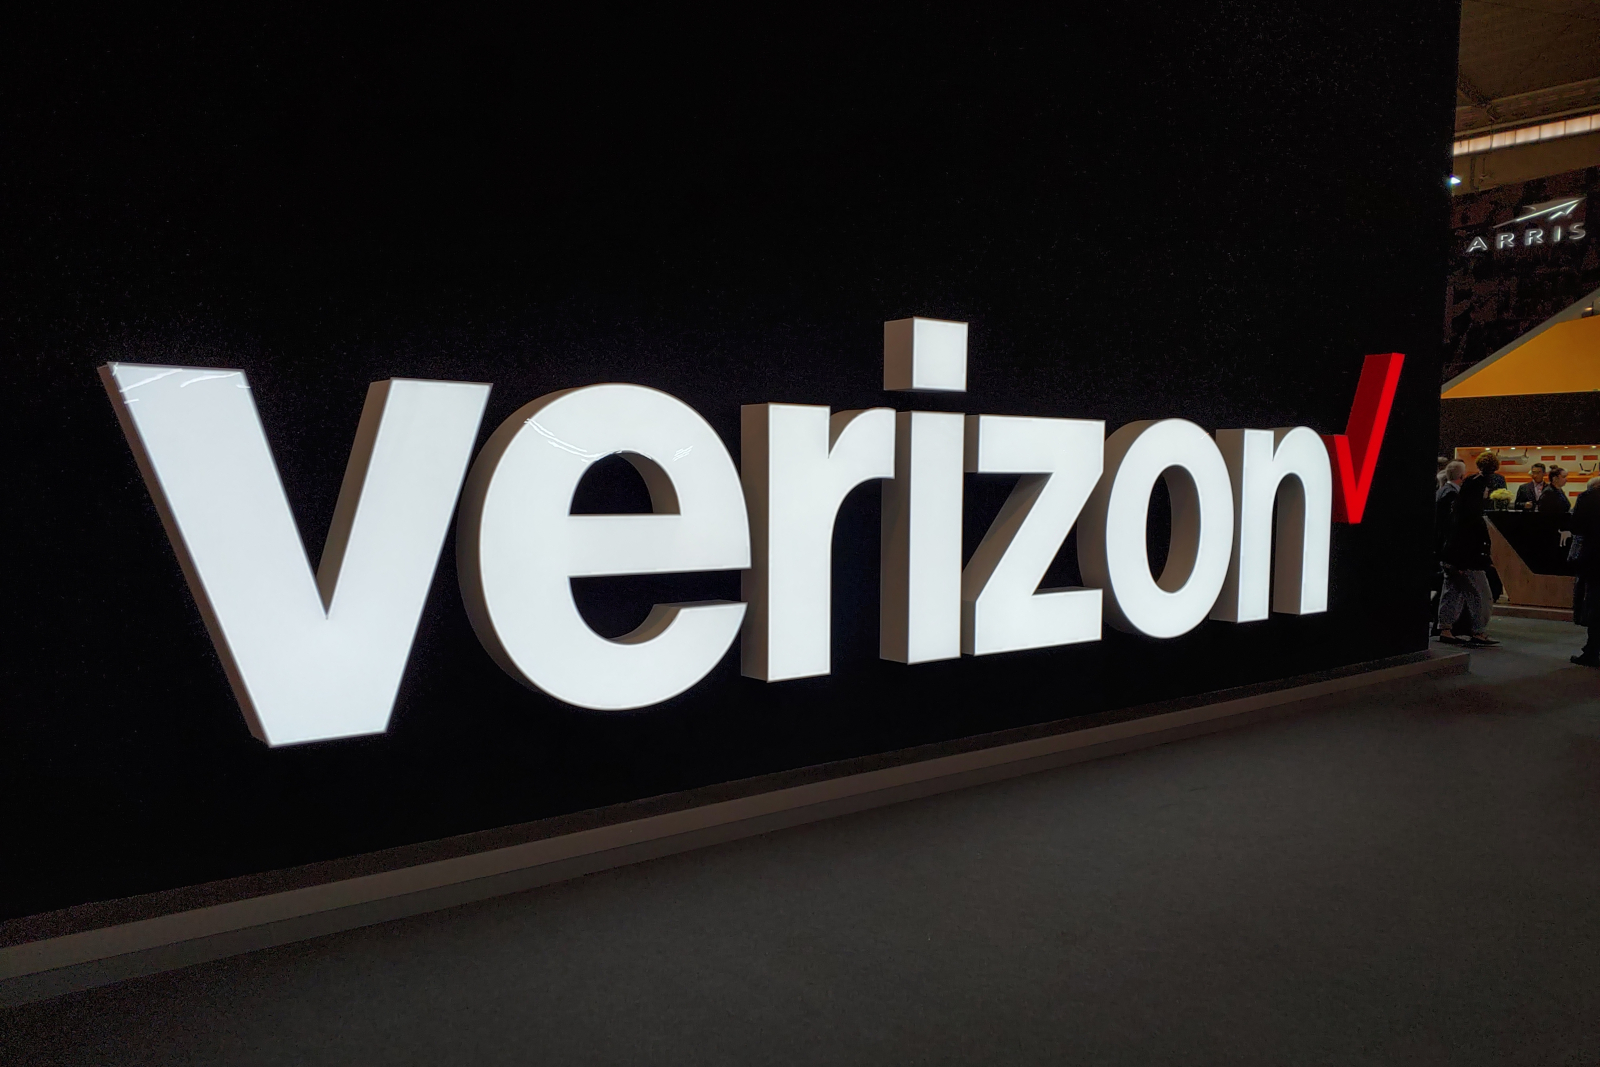 Verizon 5G entra em operação na décima cidade dos EUA no mesmo dia Samsung Galaxy Nota 10+ 5G chega